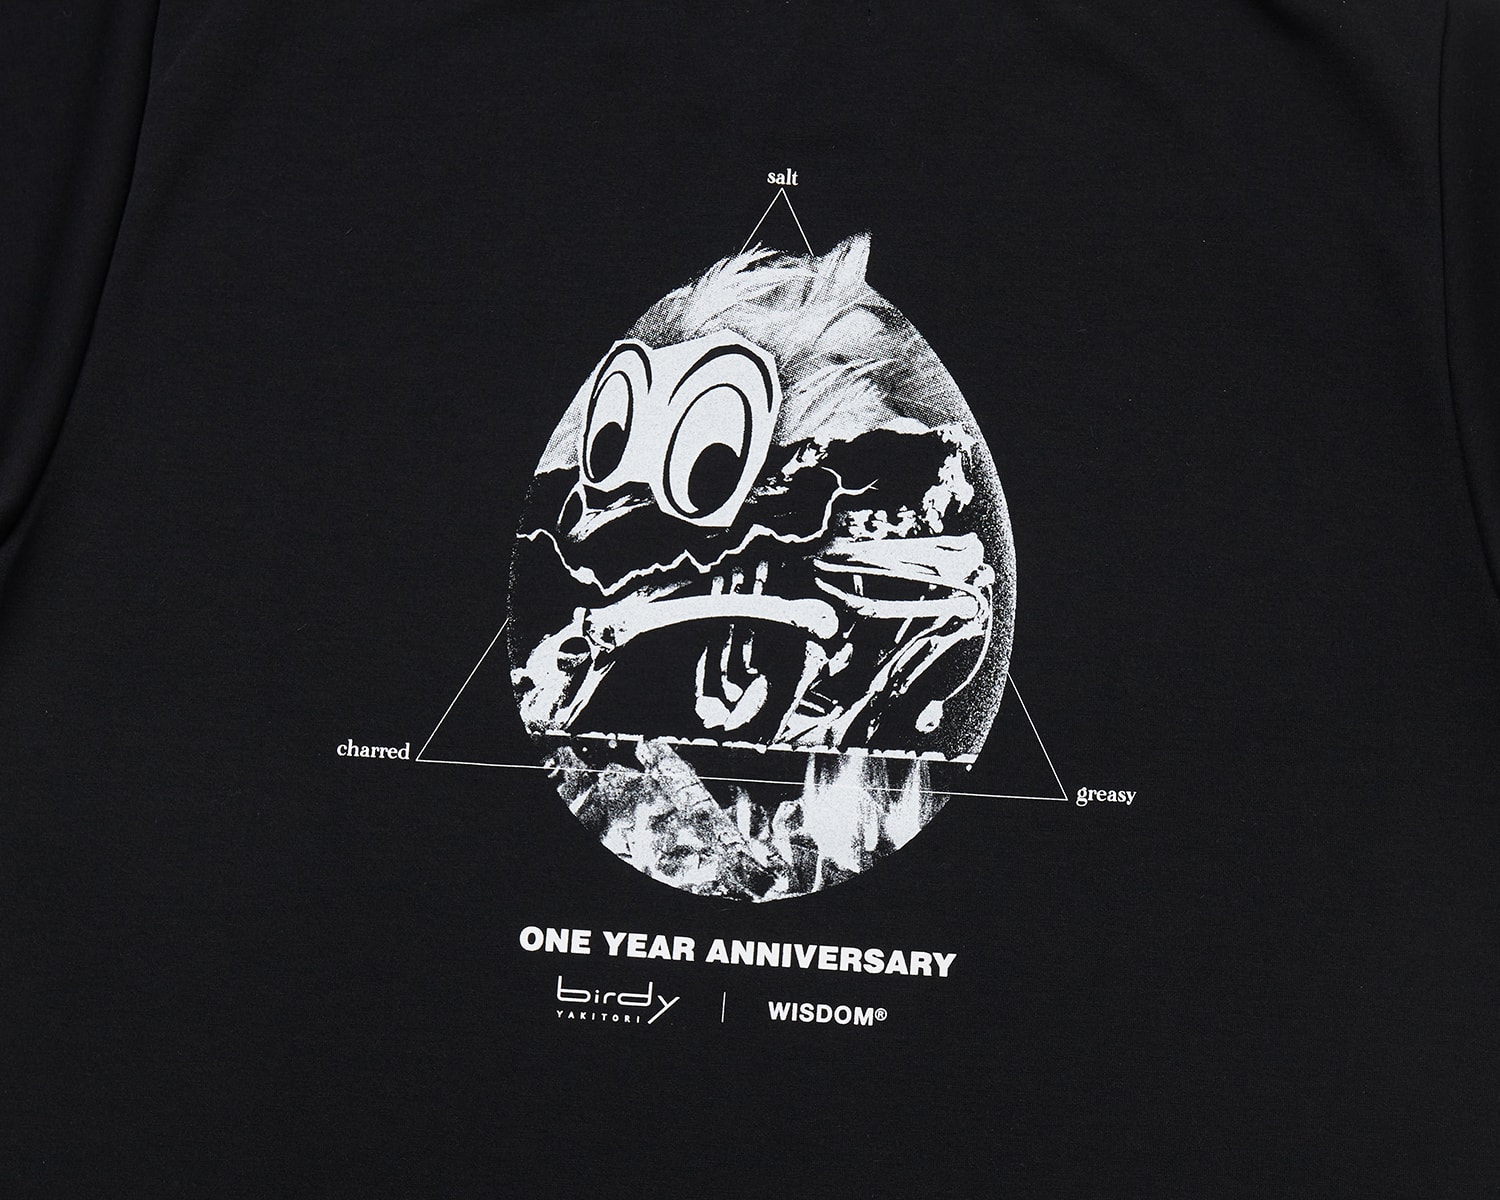 台北知名燒鳥餐廳「birdy 燒鳥狂想曲」攜手 WISDOM® 打造一週年聯名限量 T-Shirt